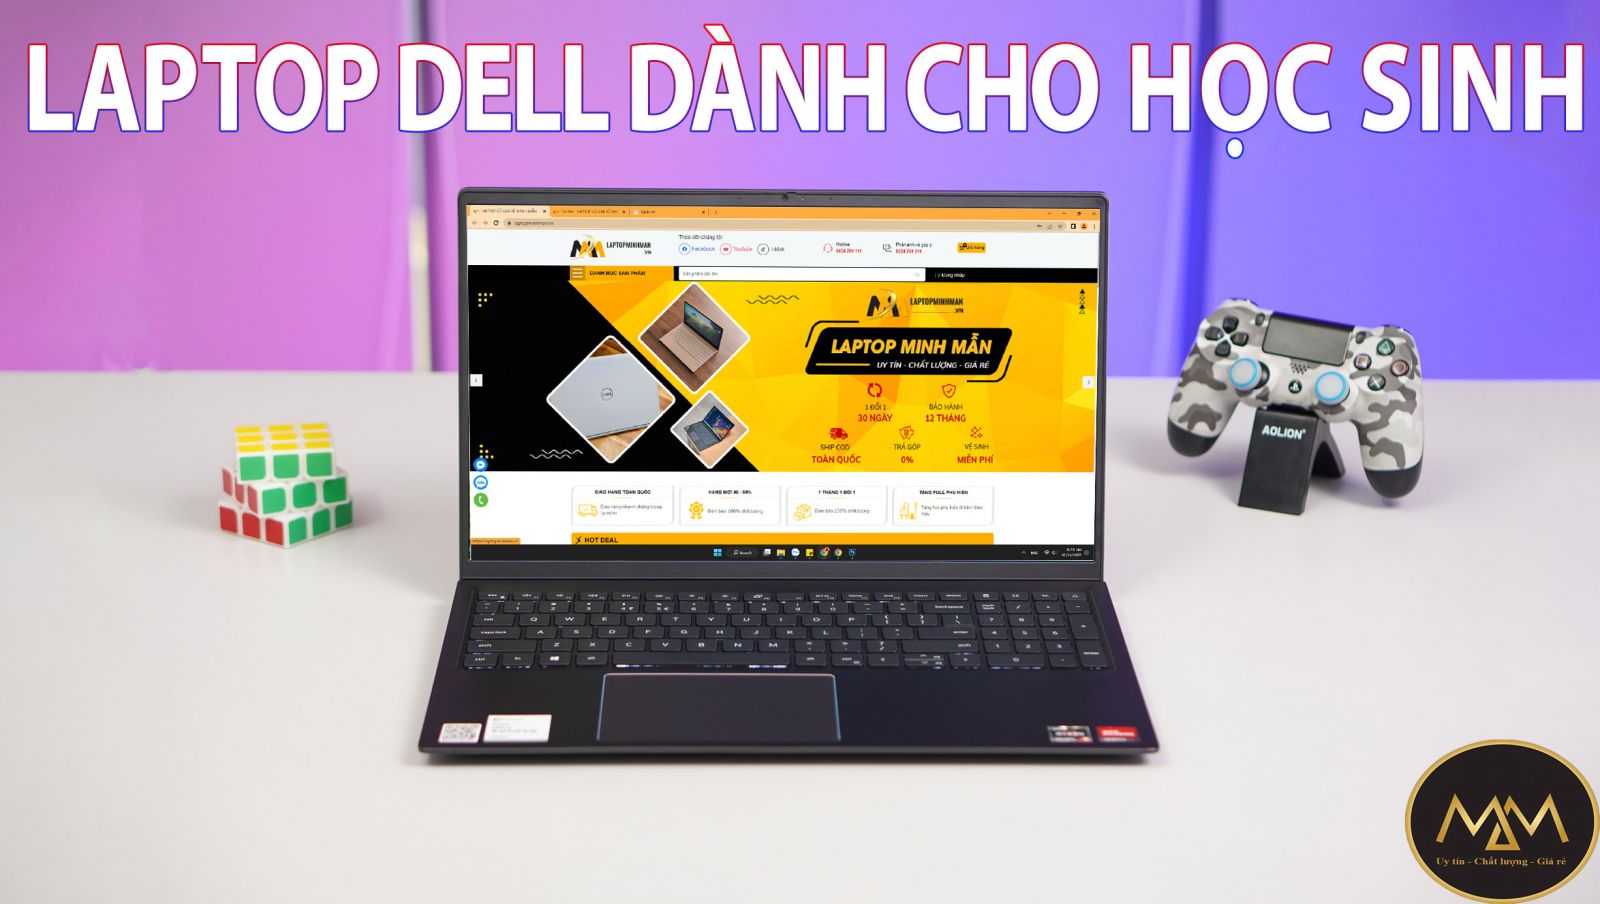 Hơn 100 mẫu laptop Dell dành cho học sinh được bán tại đây: CLICK XEM SẢN PHẨM Top 10 mẫu laptop Dell dành cho học sinh